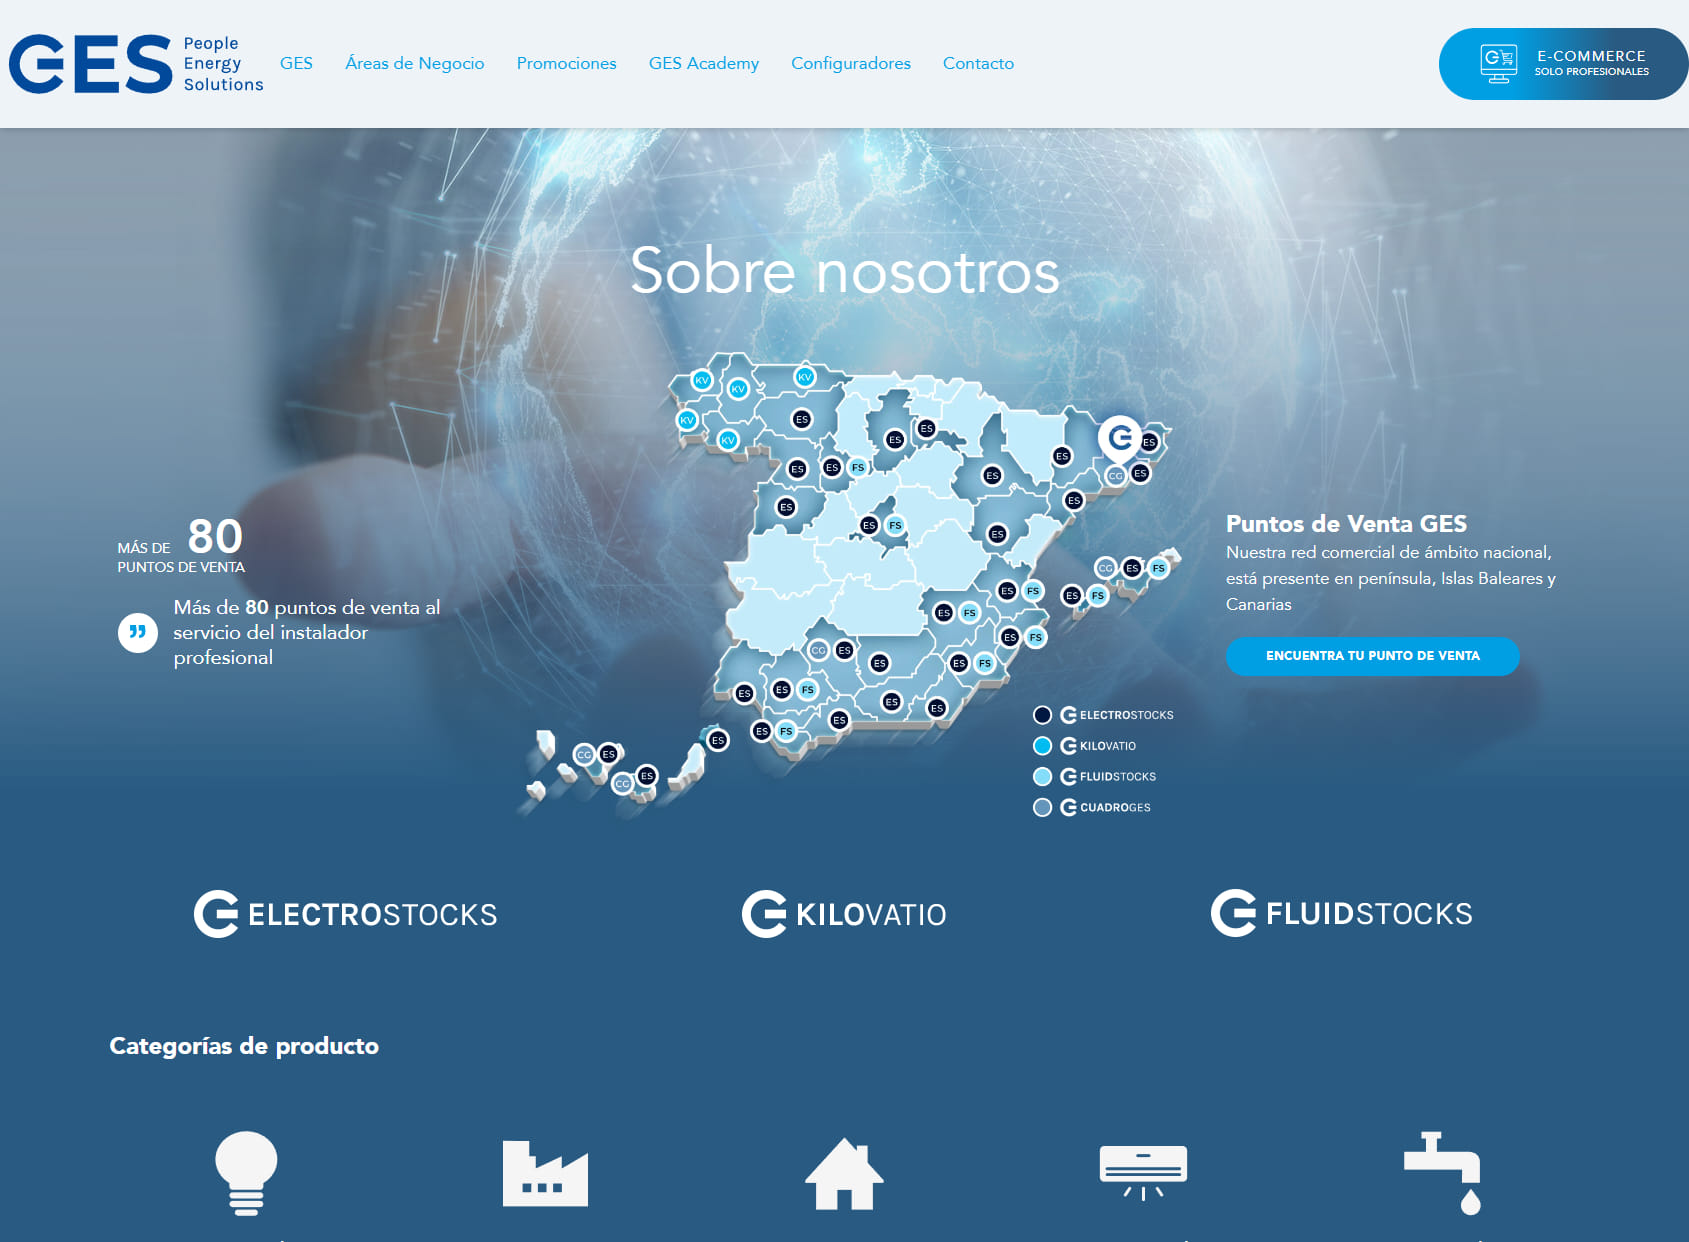 Electro Stocks Almería